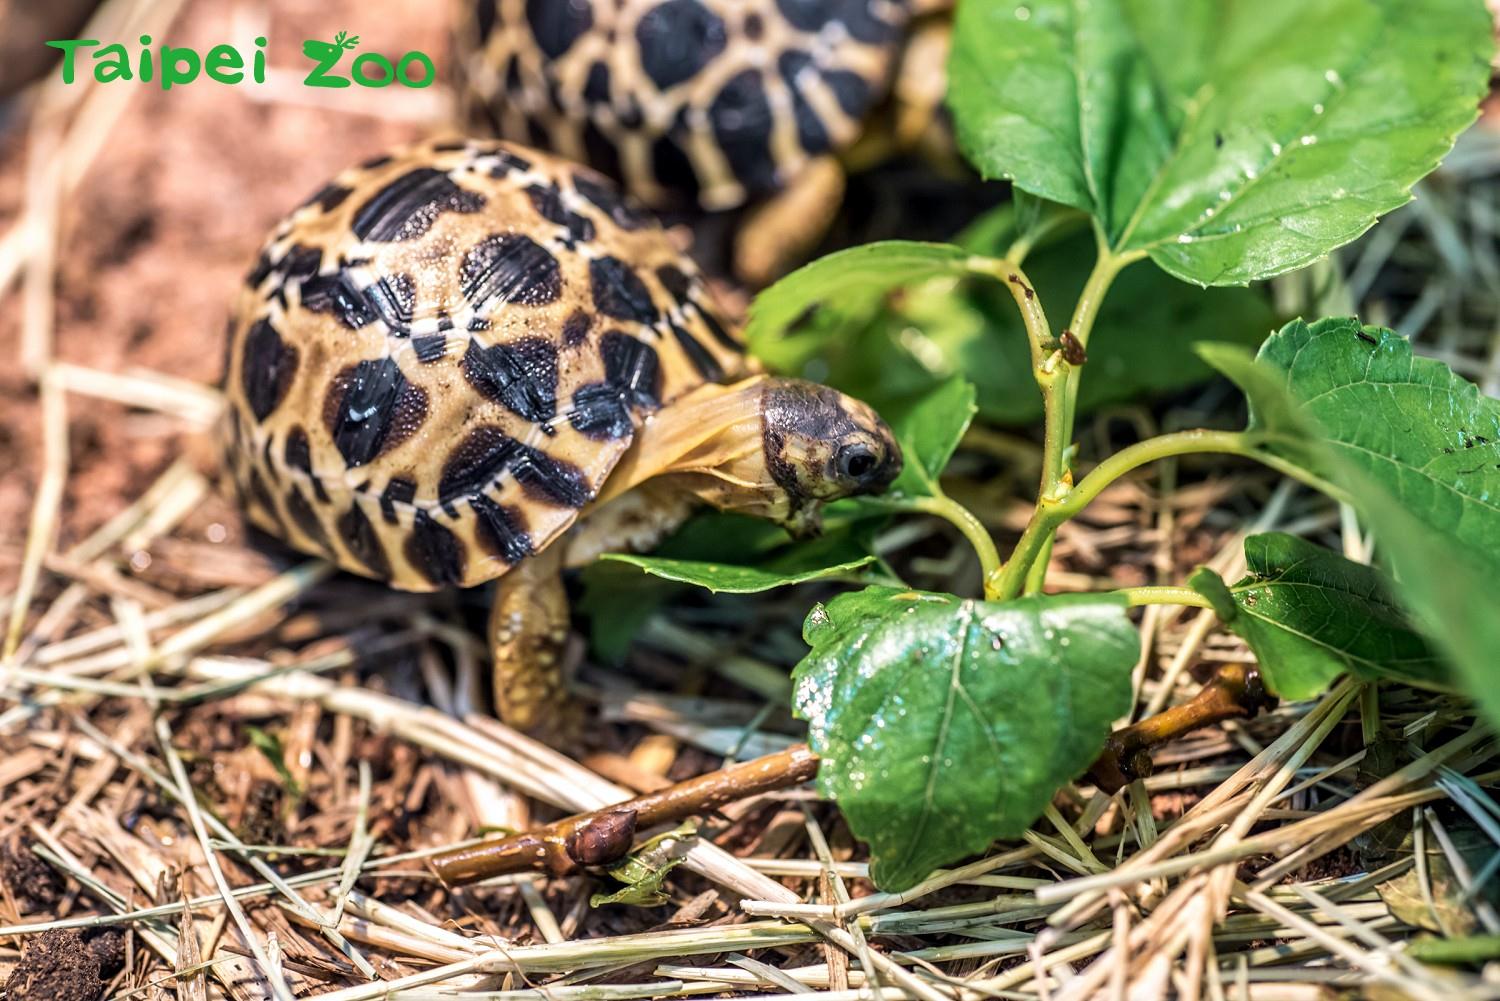 射紋陸龜因原產地馬達加斯加遭棲地破壞嚴重，被國際自然保育聯盟（IUCN）列為極度瀕危物種。 照片來源：臺北市立動物園新聞稿